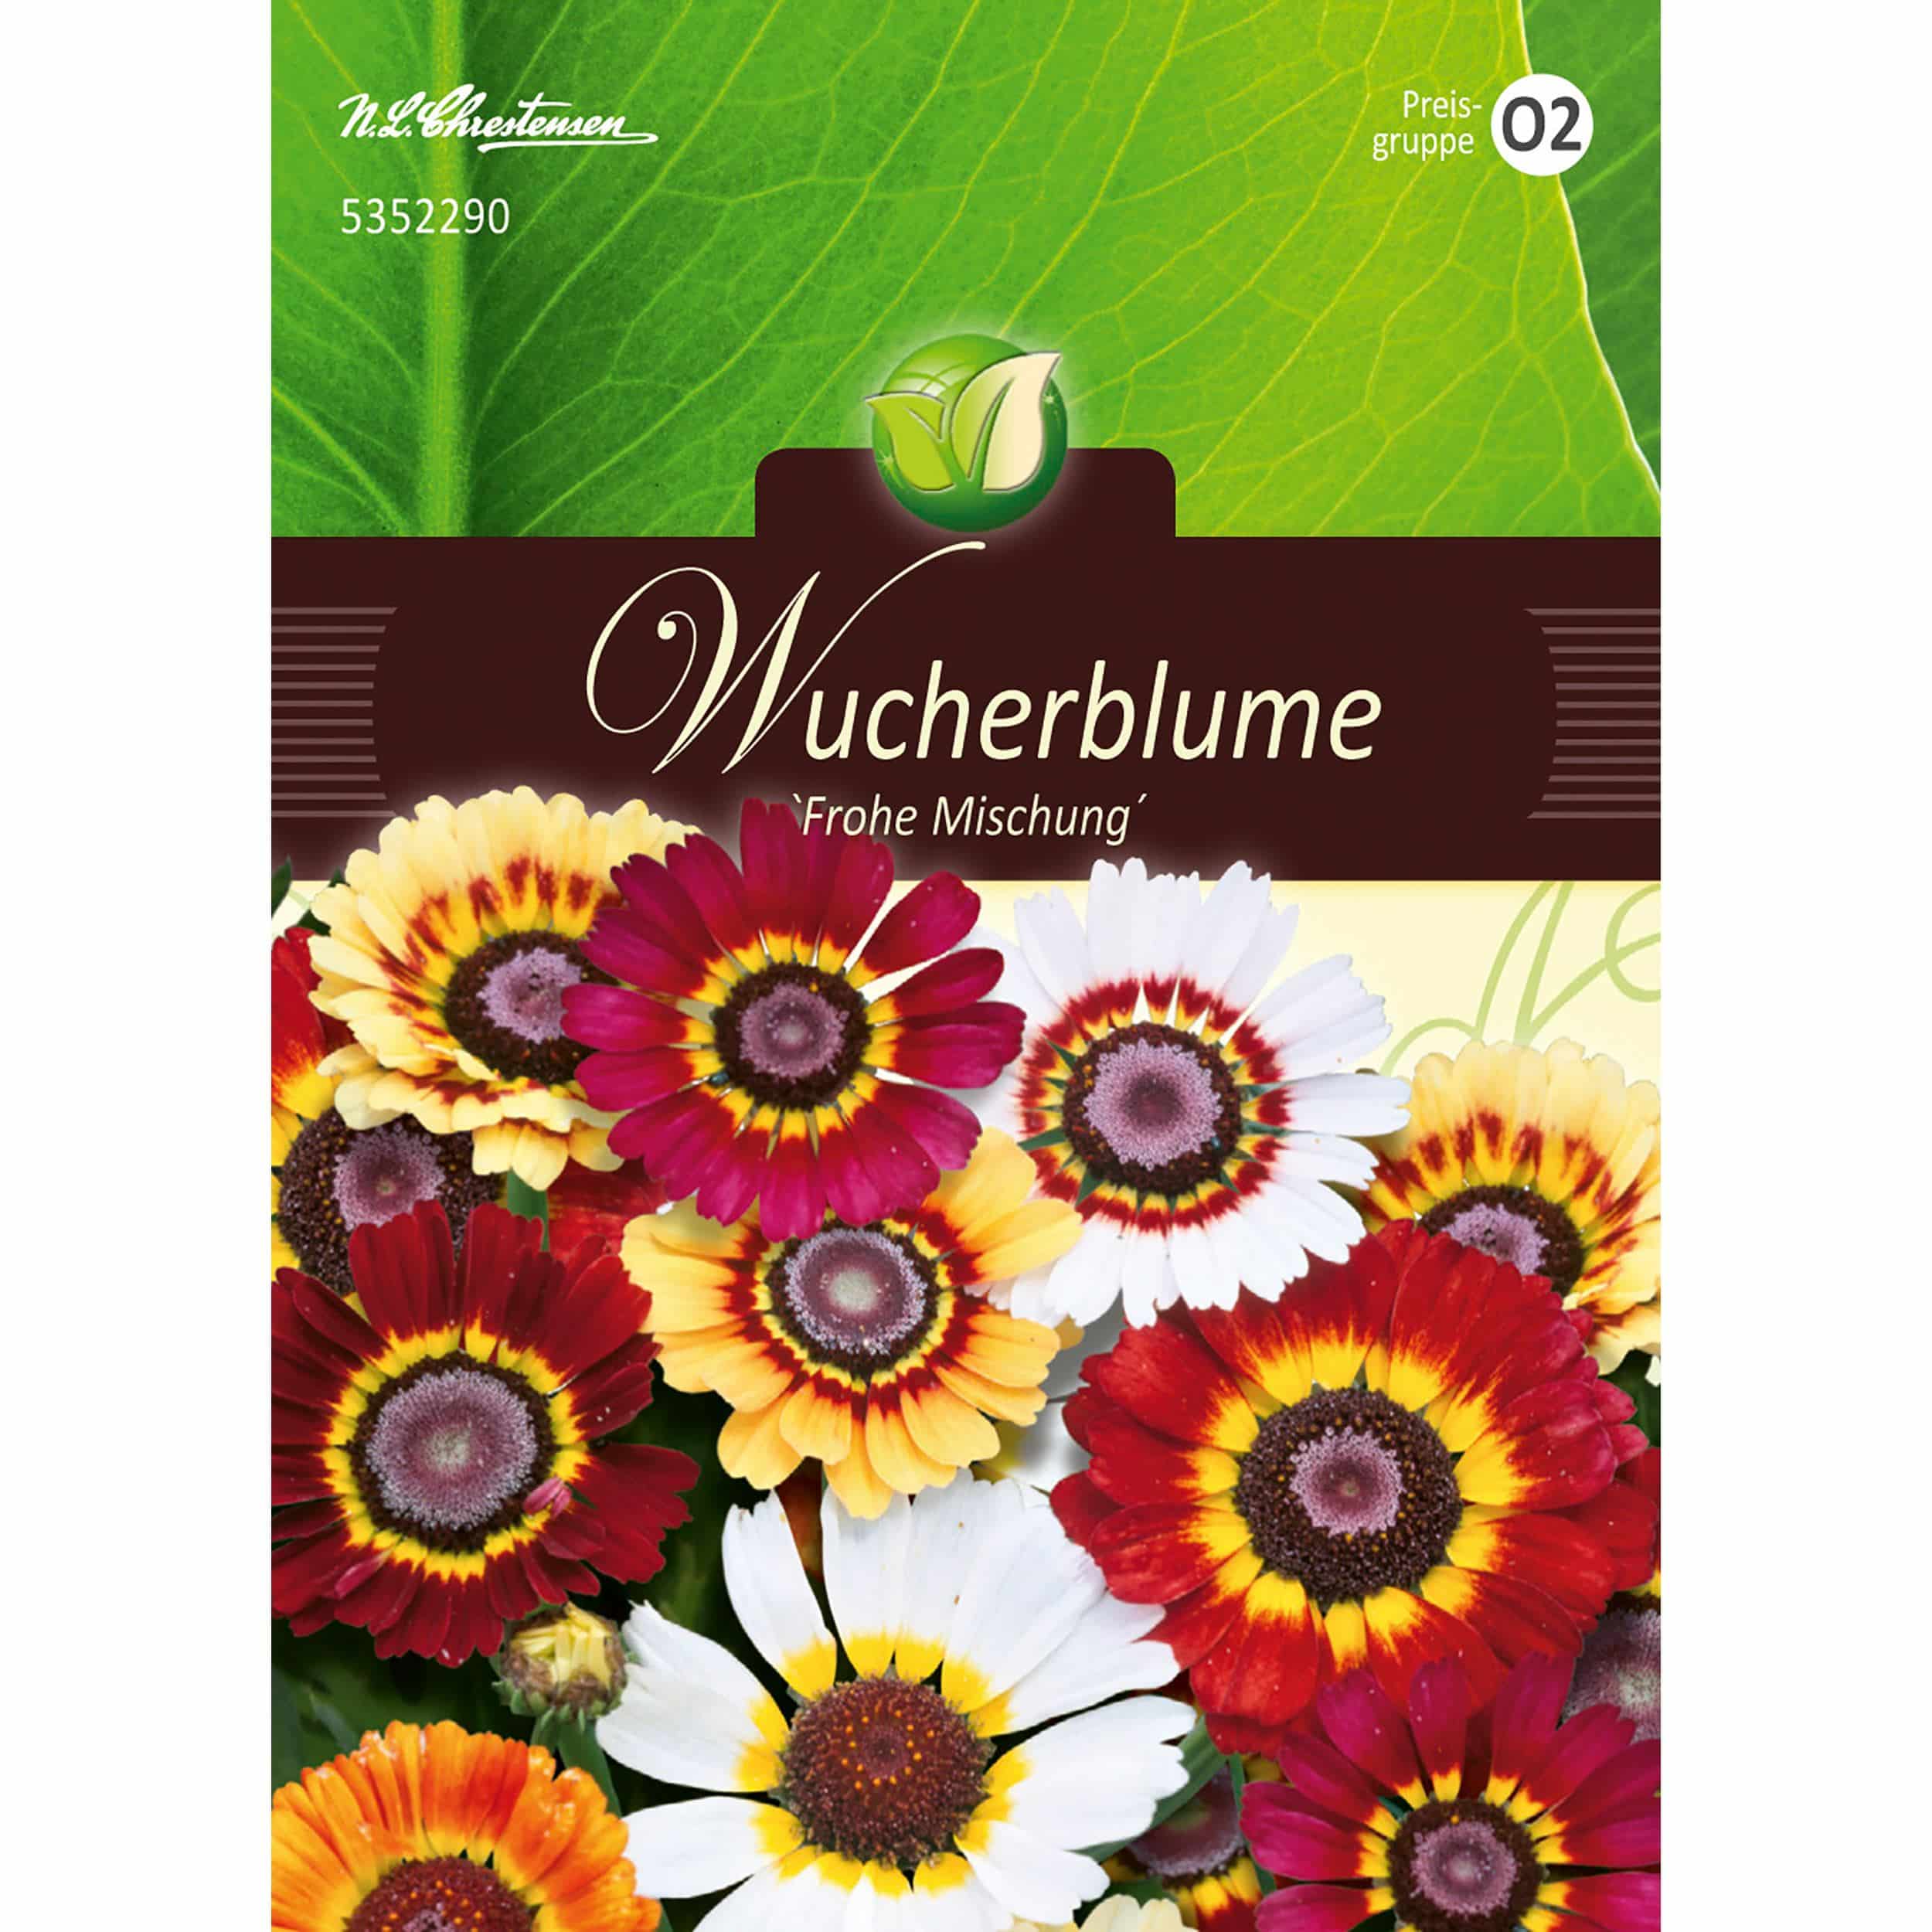 Chrysanthemum, Wucherblumen, Frohe Mischung